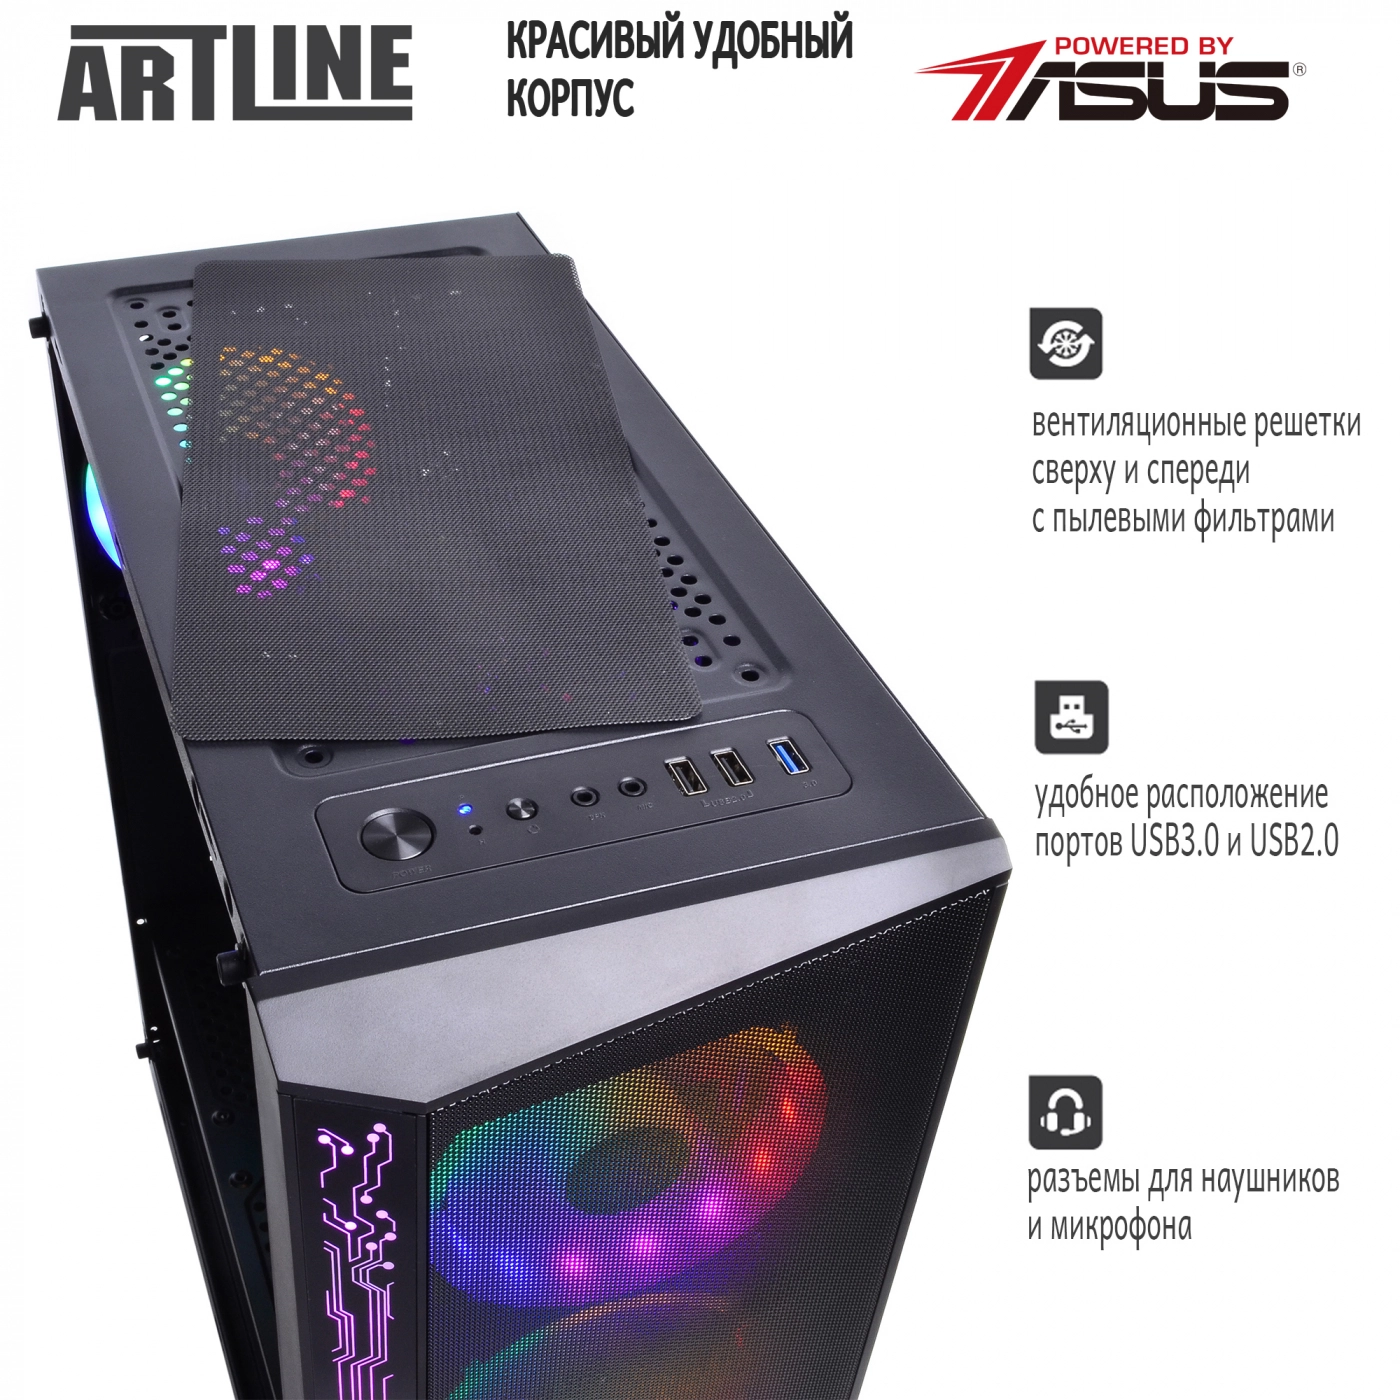 Купить Компьютер ARTLINE Gaming X35v34 - фото 4